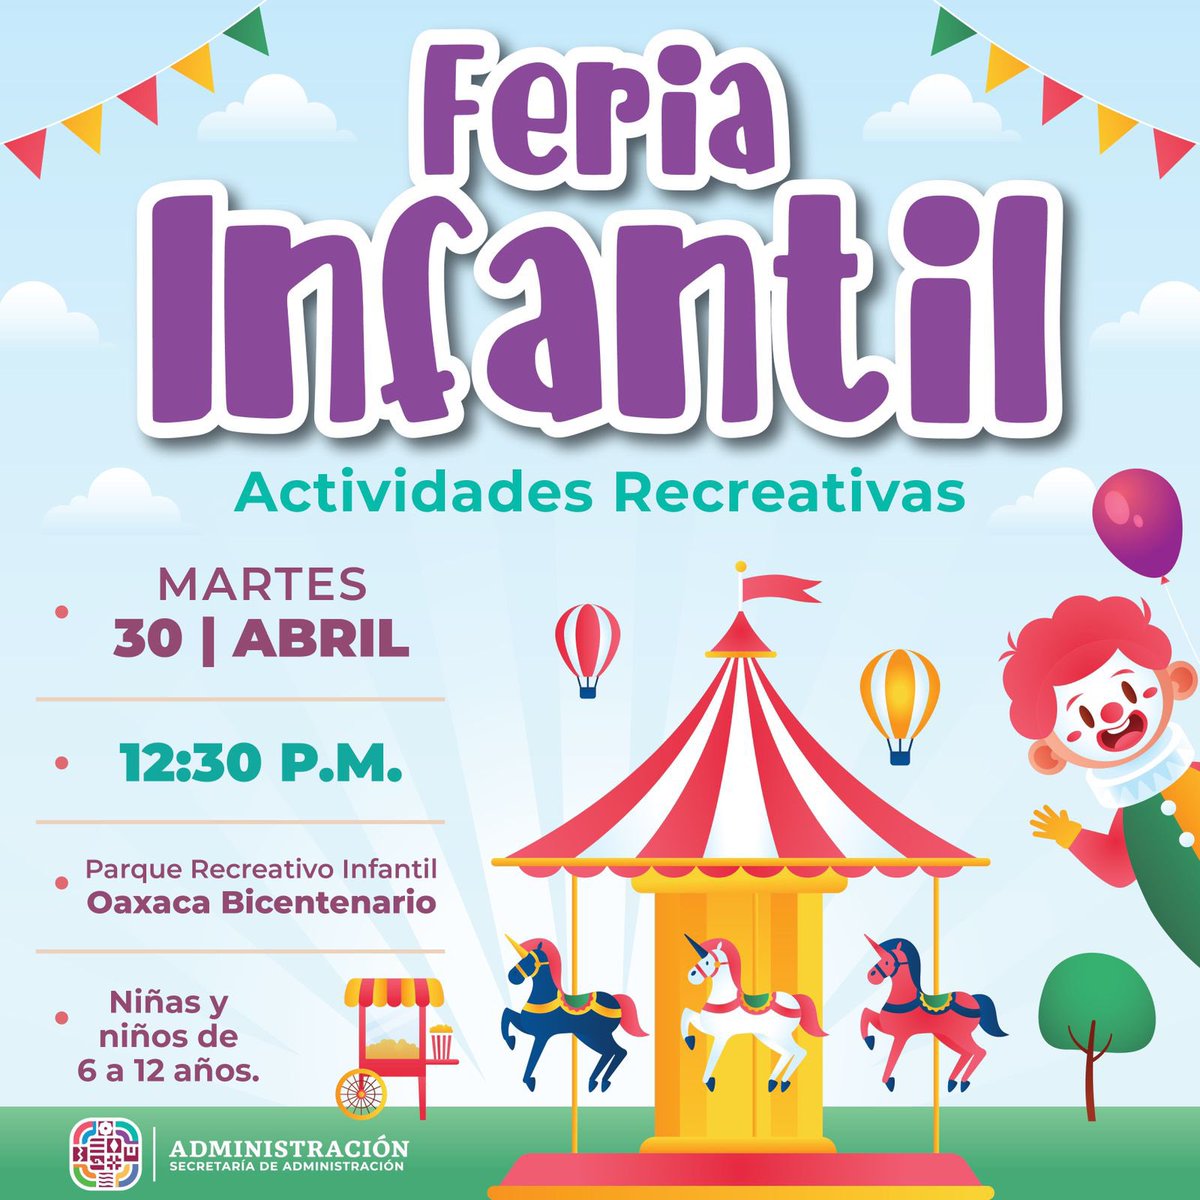 Asiste a las actividades recreativas de la Feria Infantil que organiza la Secretaría de @Admon_GobOax, en el marco del Día de la Niña y el Niño. La cita es este 30 de abril, a las 12:30 horas en el Parque Recreativo Infantil Oaxaca Bicentenario.